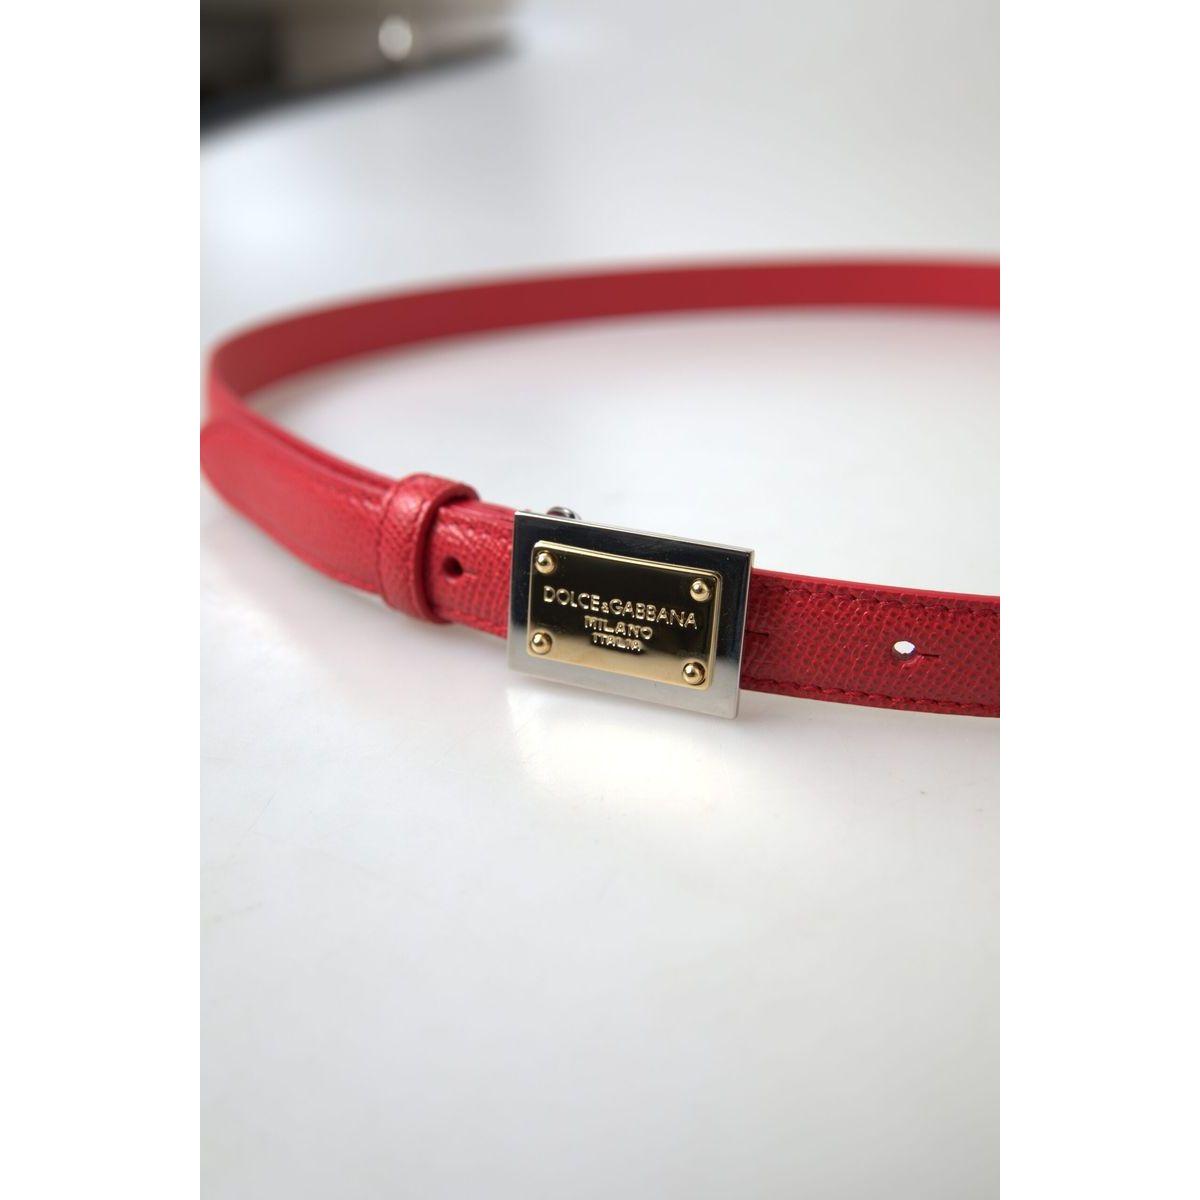 Dolce & Gabbana Elegant Red Leather Designer Belt red-leather-gold-engraved-metal-buckle-belt 465A5243-scaled-f4d1f640-6f8.jpg